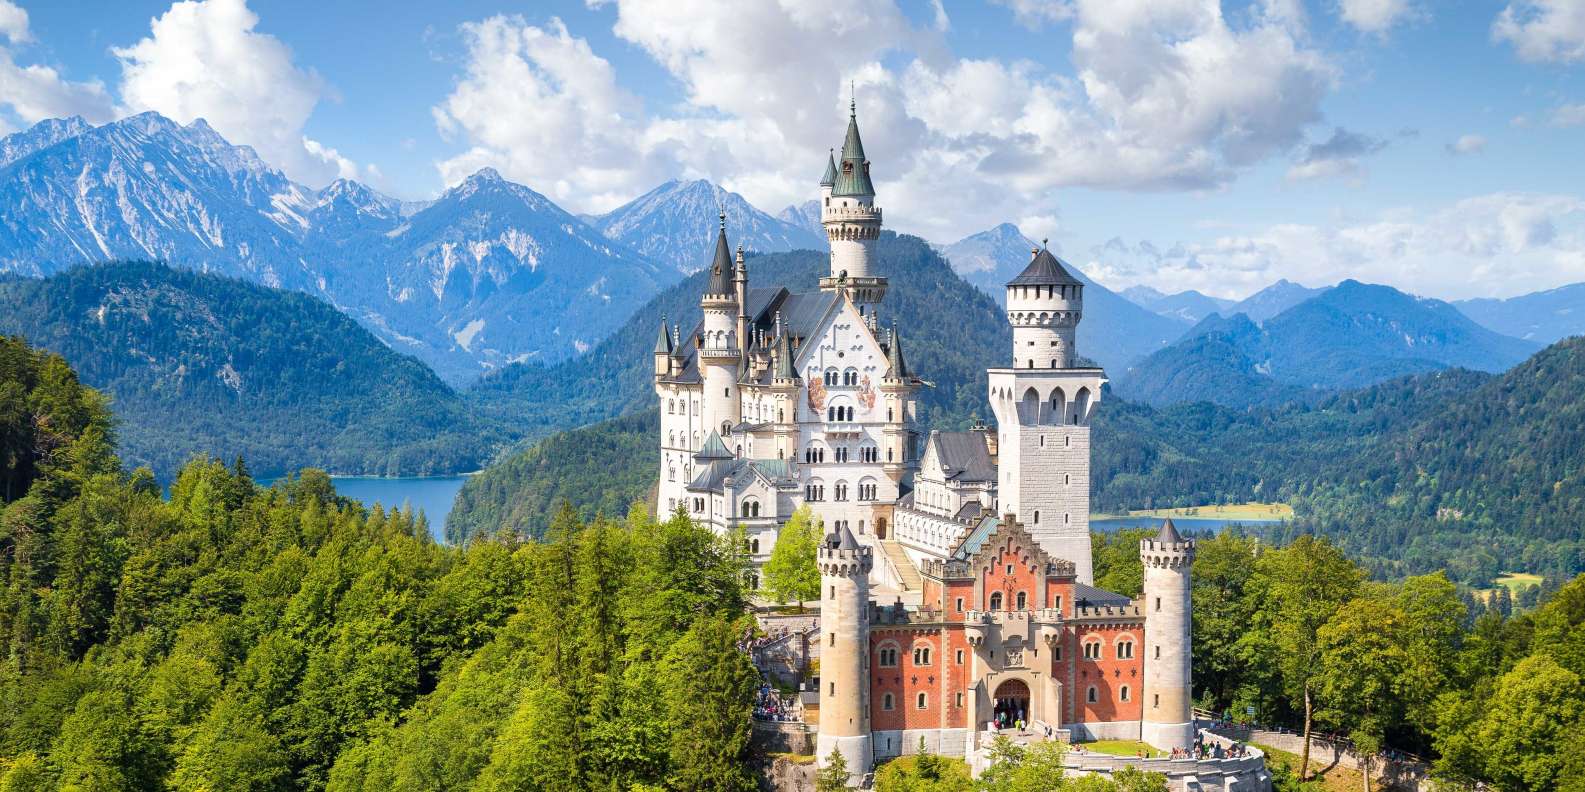 Bavarian Alps, Garmisch-Partenkirchen - Book Tickets & Tours | GetYourGuide